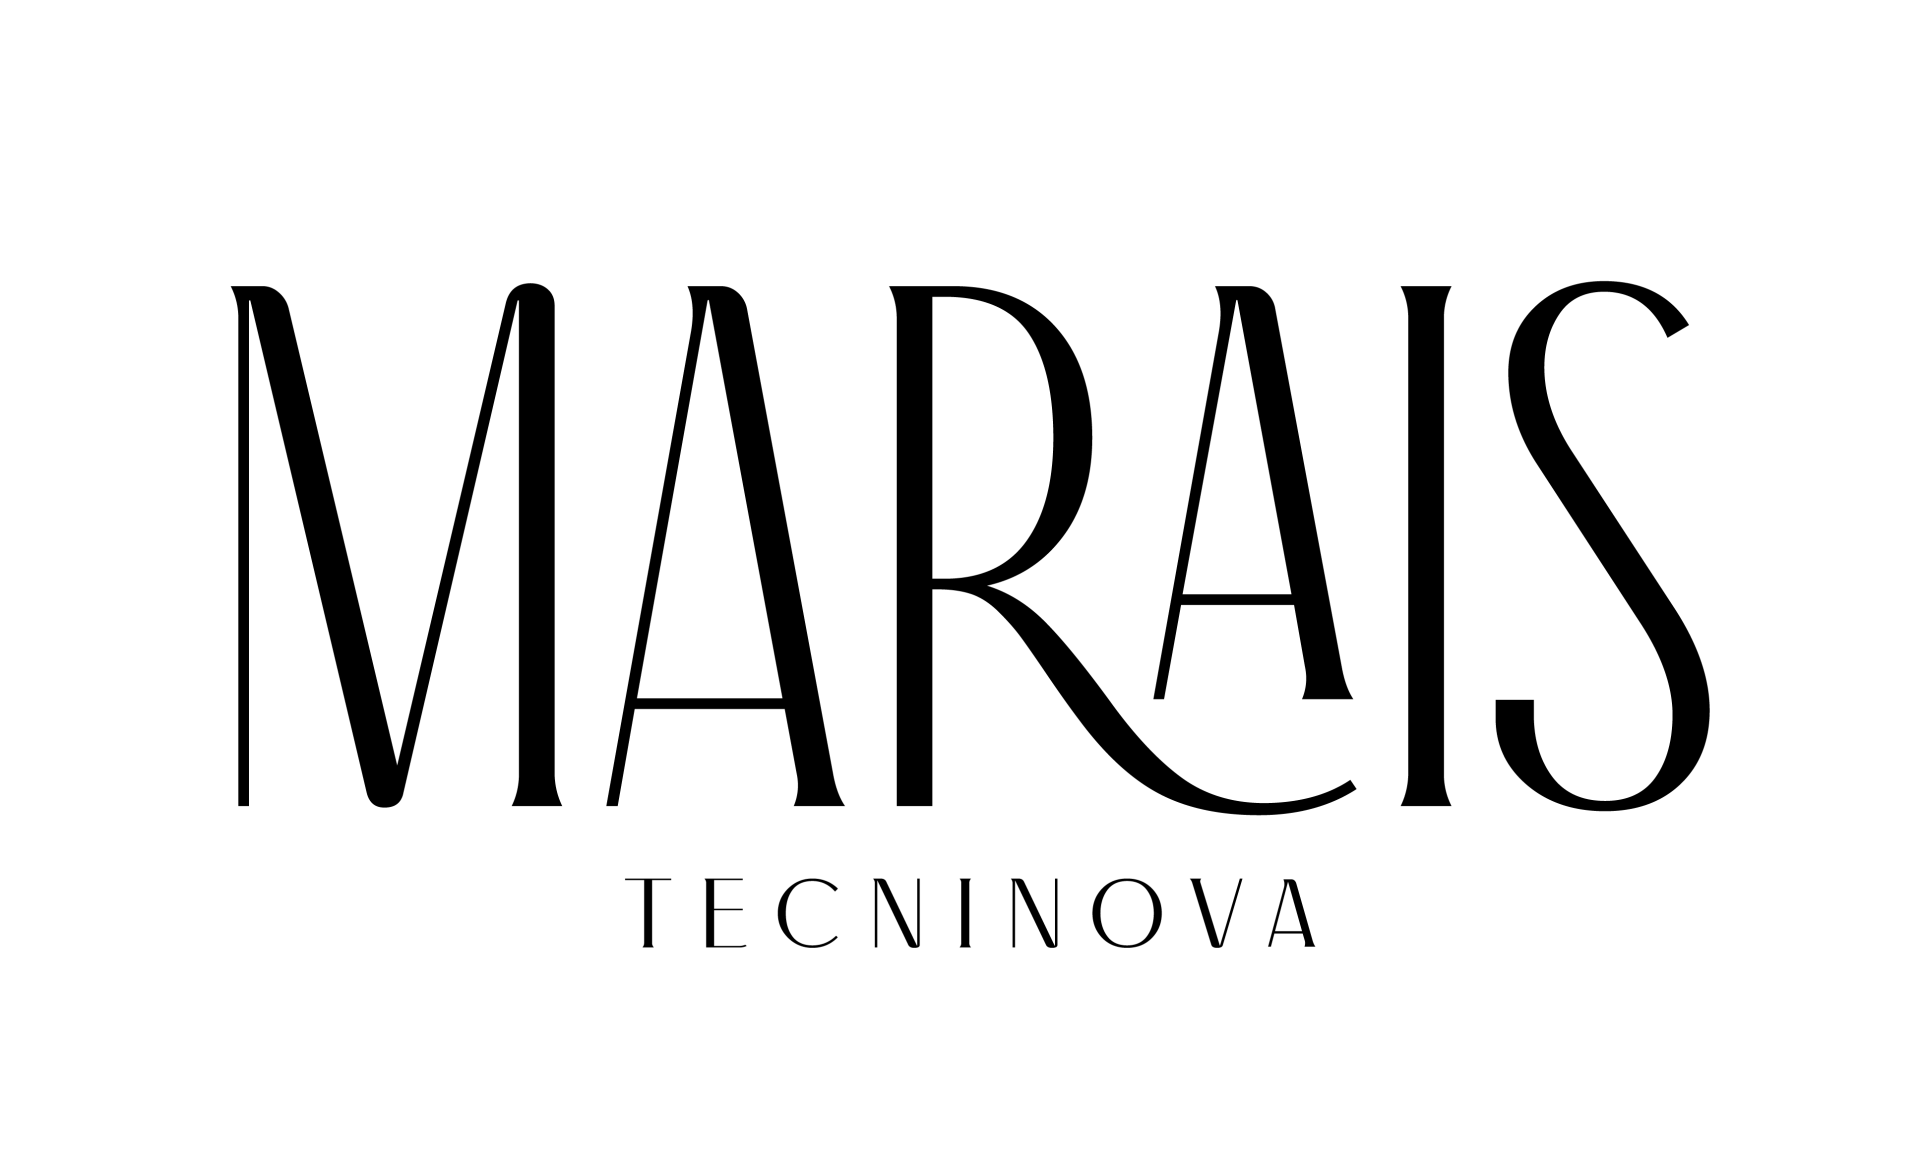 Marais collection by tecninova